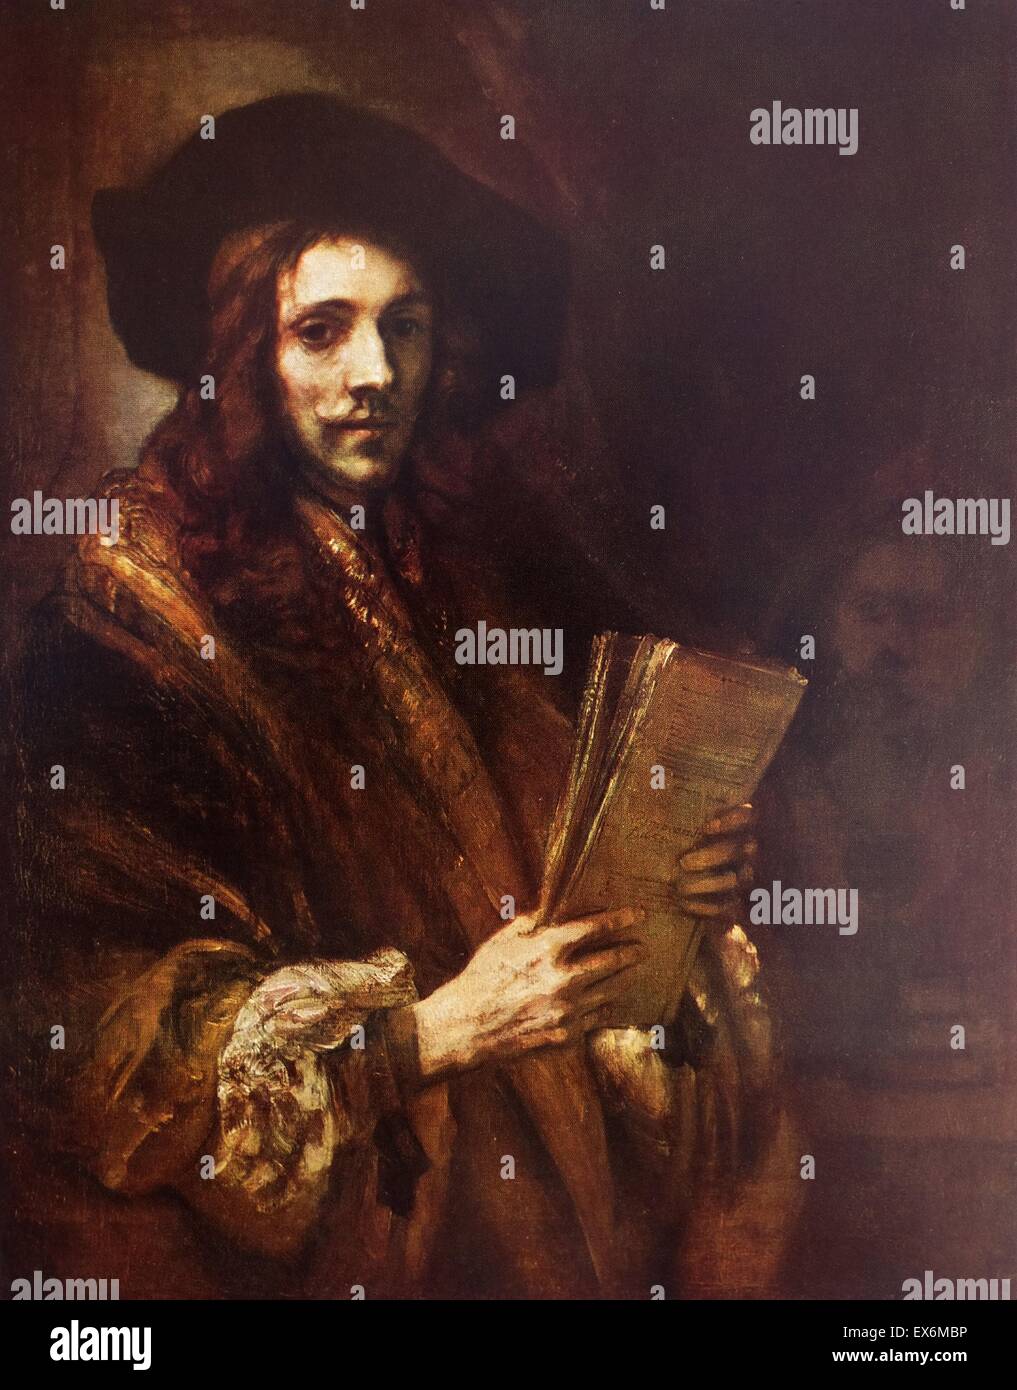 Rembrandt Harmenszoon van Rijn's painting intitulé 'Portrait d'un homme'. Rembrandt (1606-1669) peintre et graveur néerlandais de l'âge d'or hollandais et baroque. En date du 17e siècle Banque D'Images